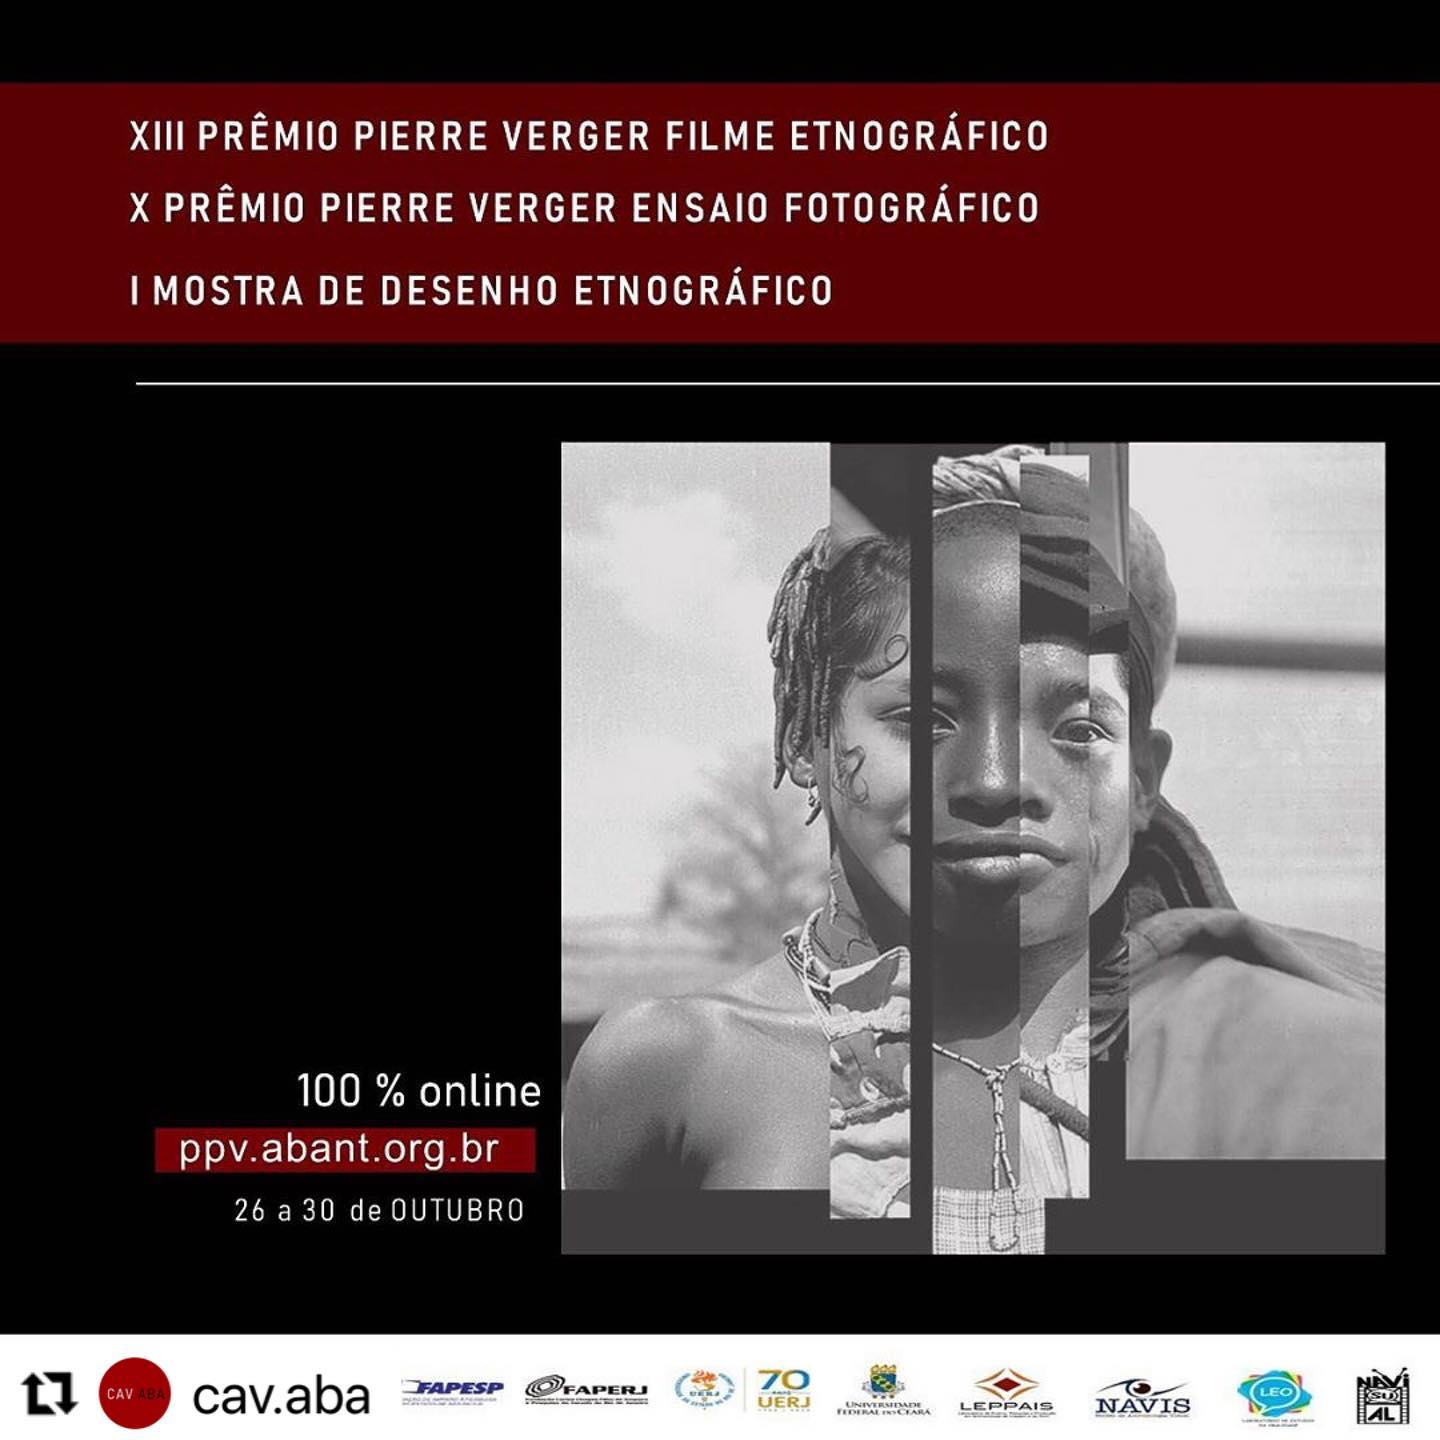 Prêmio Pierre Verger, edição 2022 - MOSTRAS - FILME ETNOGRÁFICO